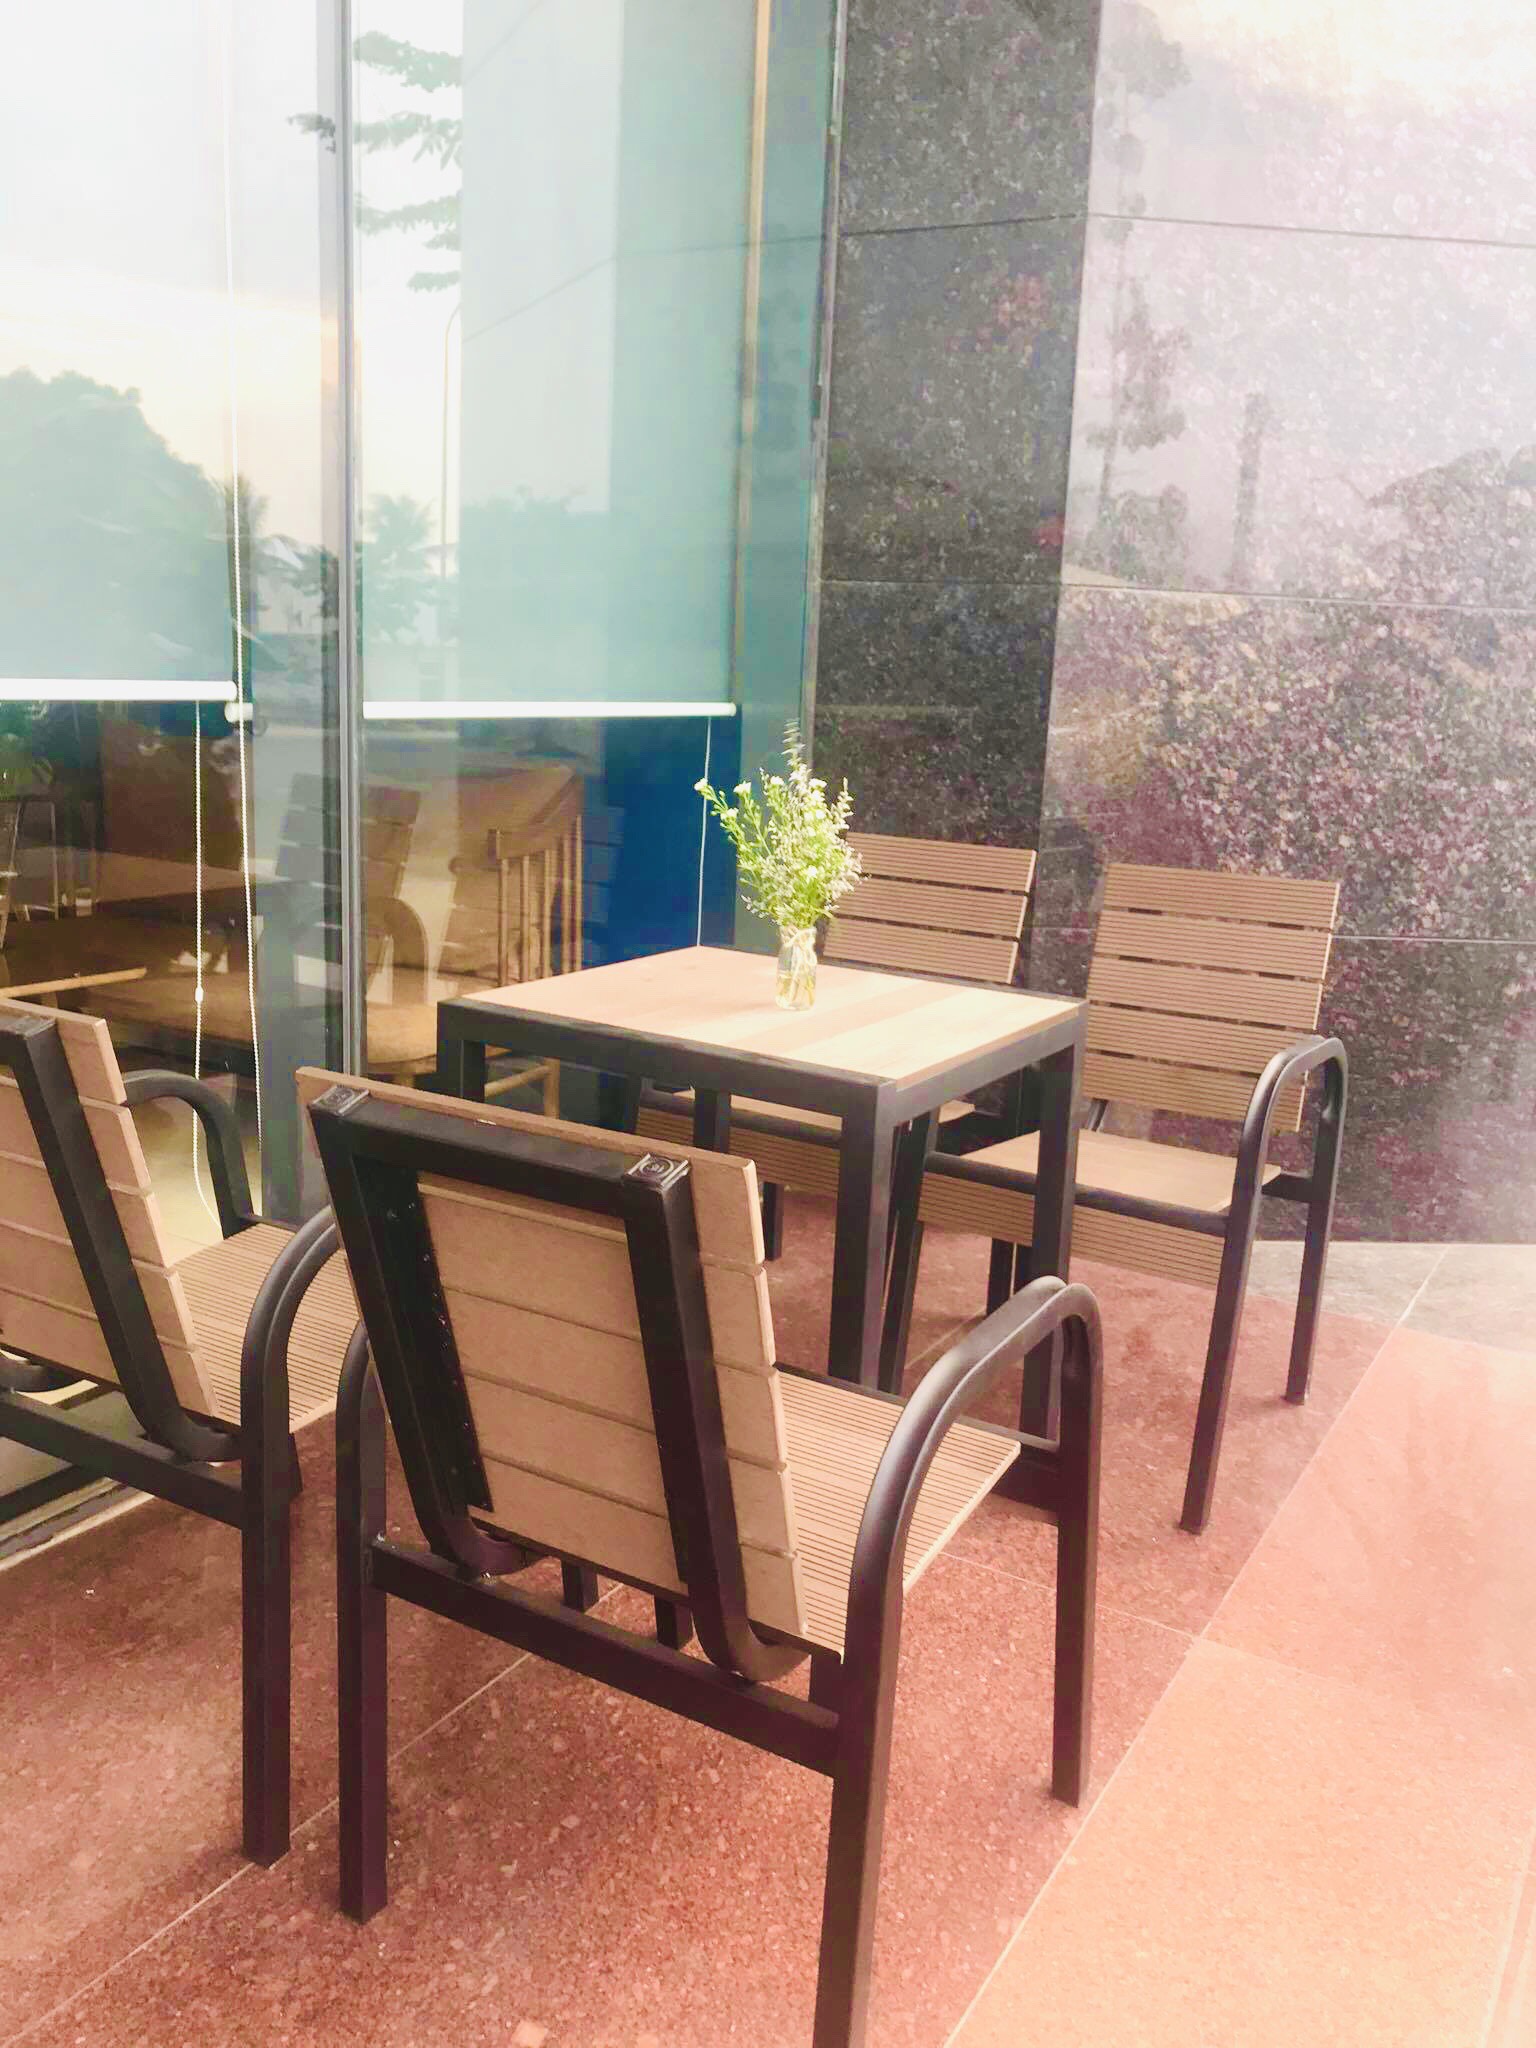 Bàn ghế sân vườn làm bằng vật liệu gỗ nhựa composite